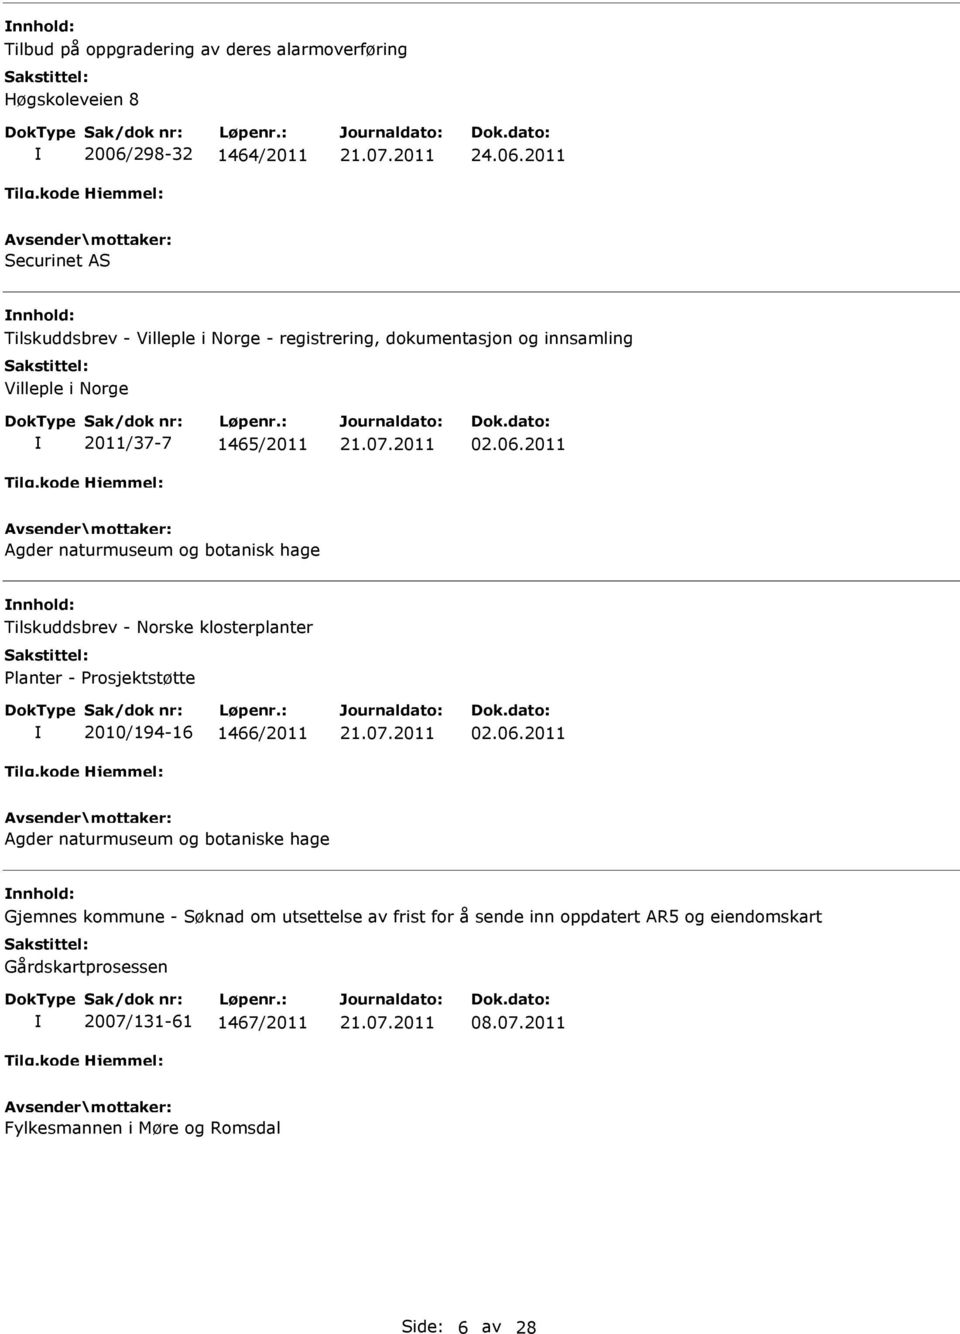 2011 Securinet AS Tilskuddsbrev - Villeple i Norge - registrering, dokumentasjon og innsamling Villeple i Norge 2011/37-7 1465/2011 02.06.